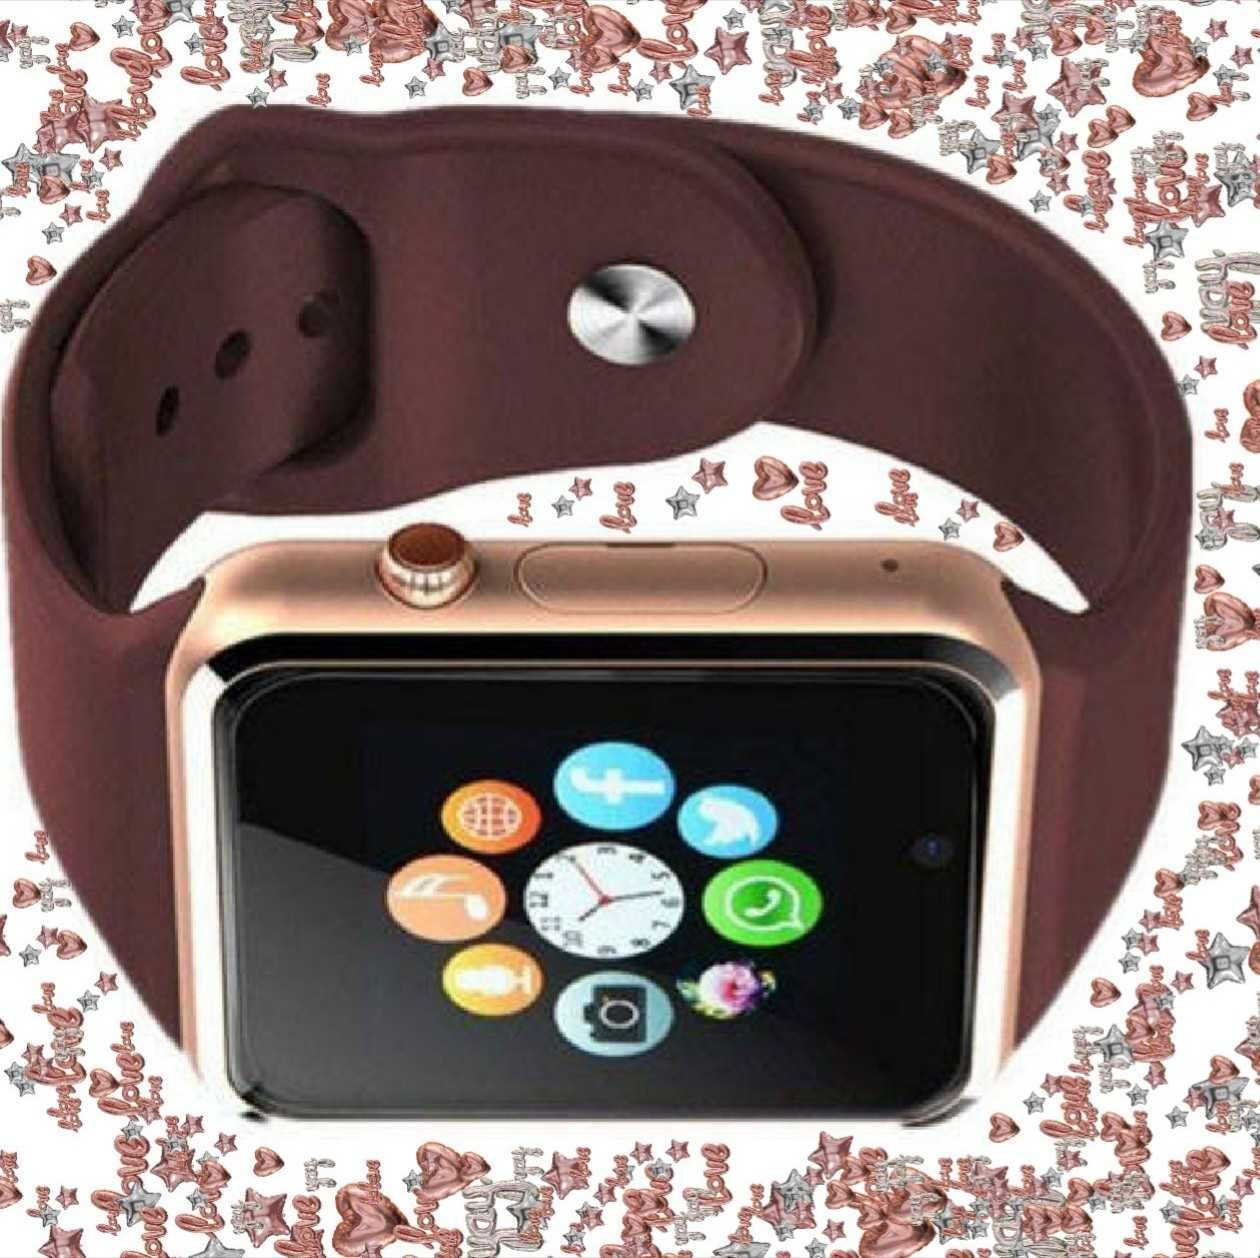 Умные электронные Смарт-часы Smart Watch A1 Цвет: золотой